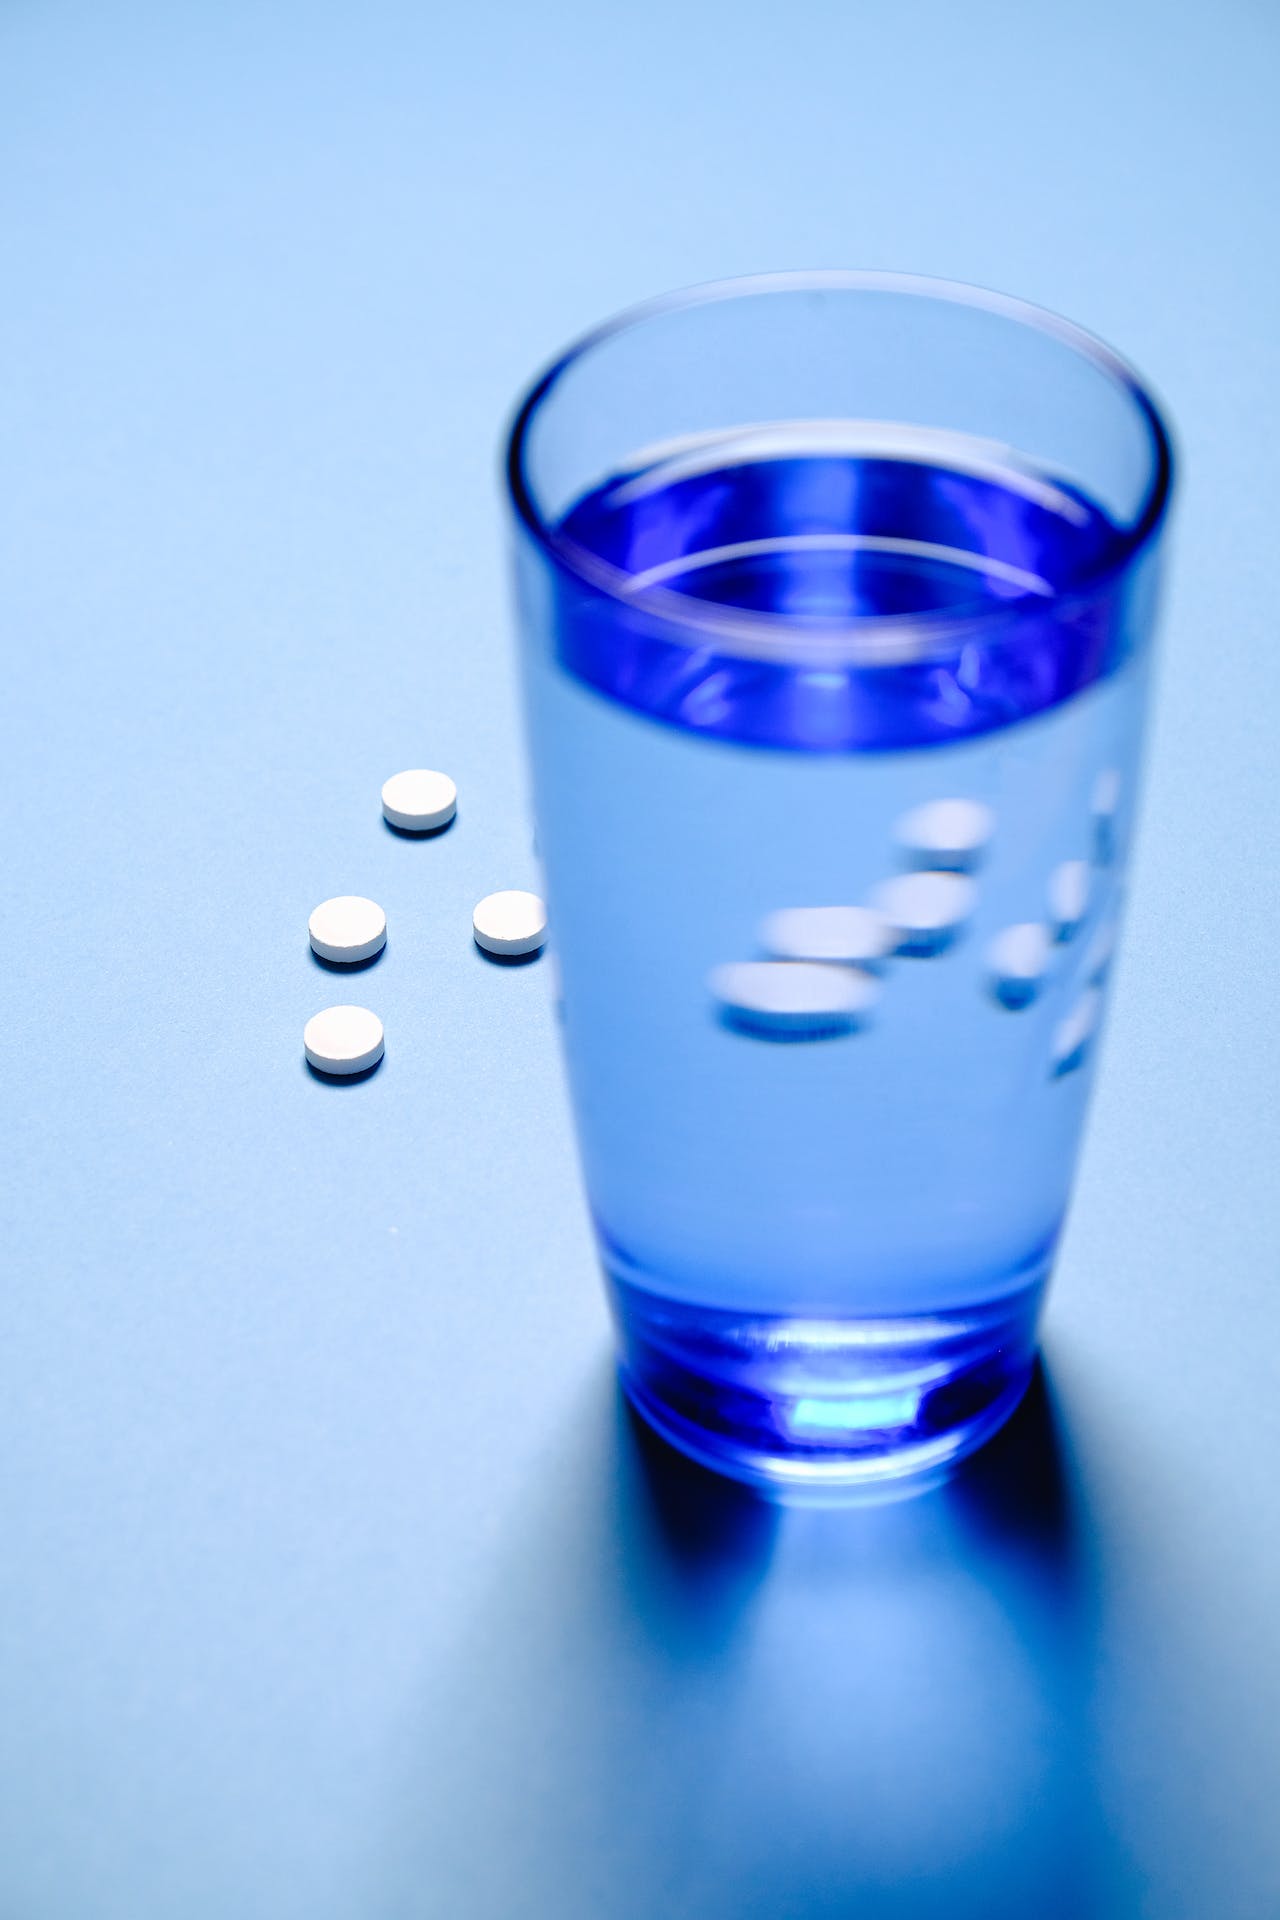 Таблетки, антидепрессанты, нельзя сочетать с антидепрессантами